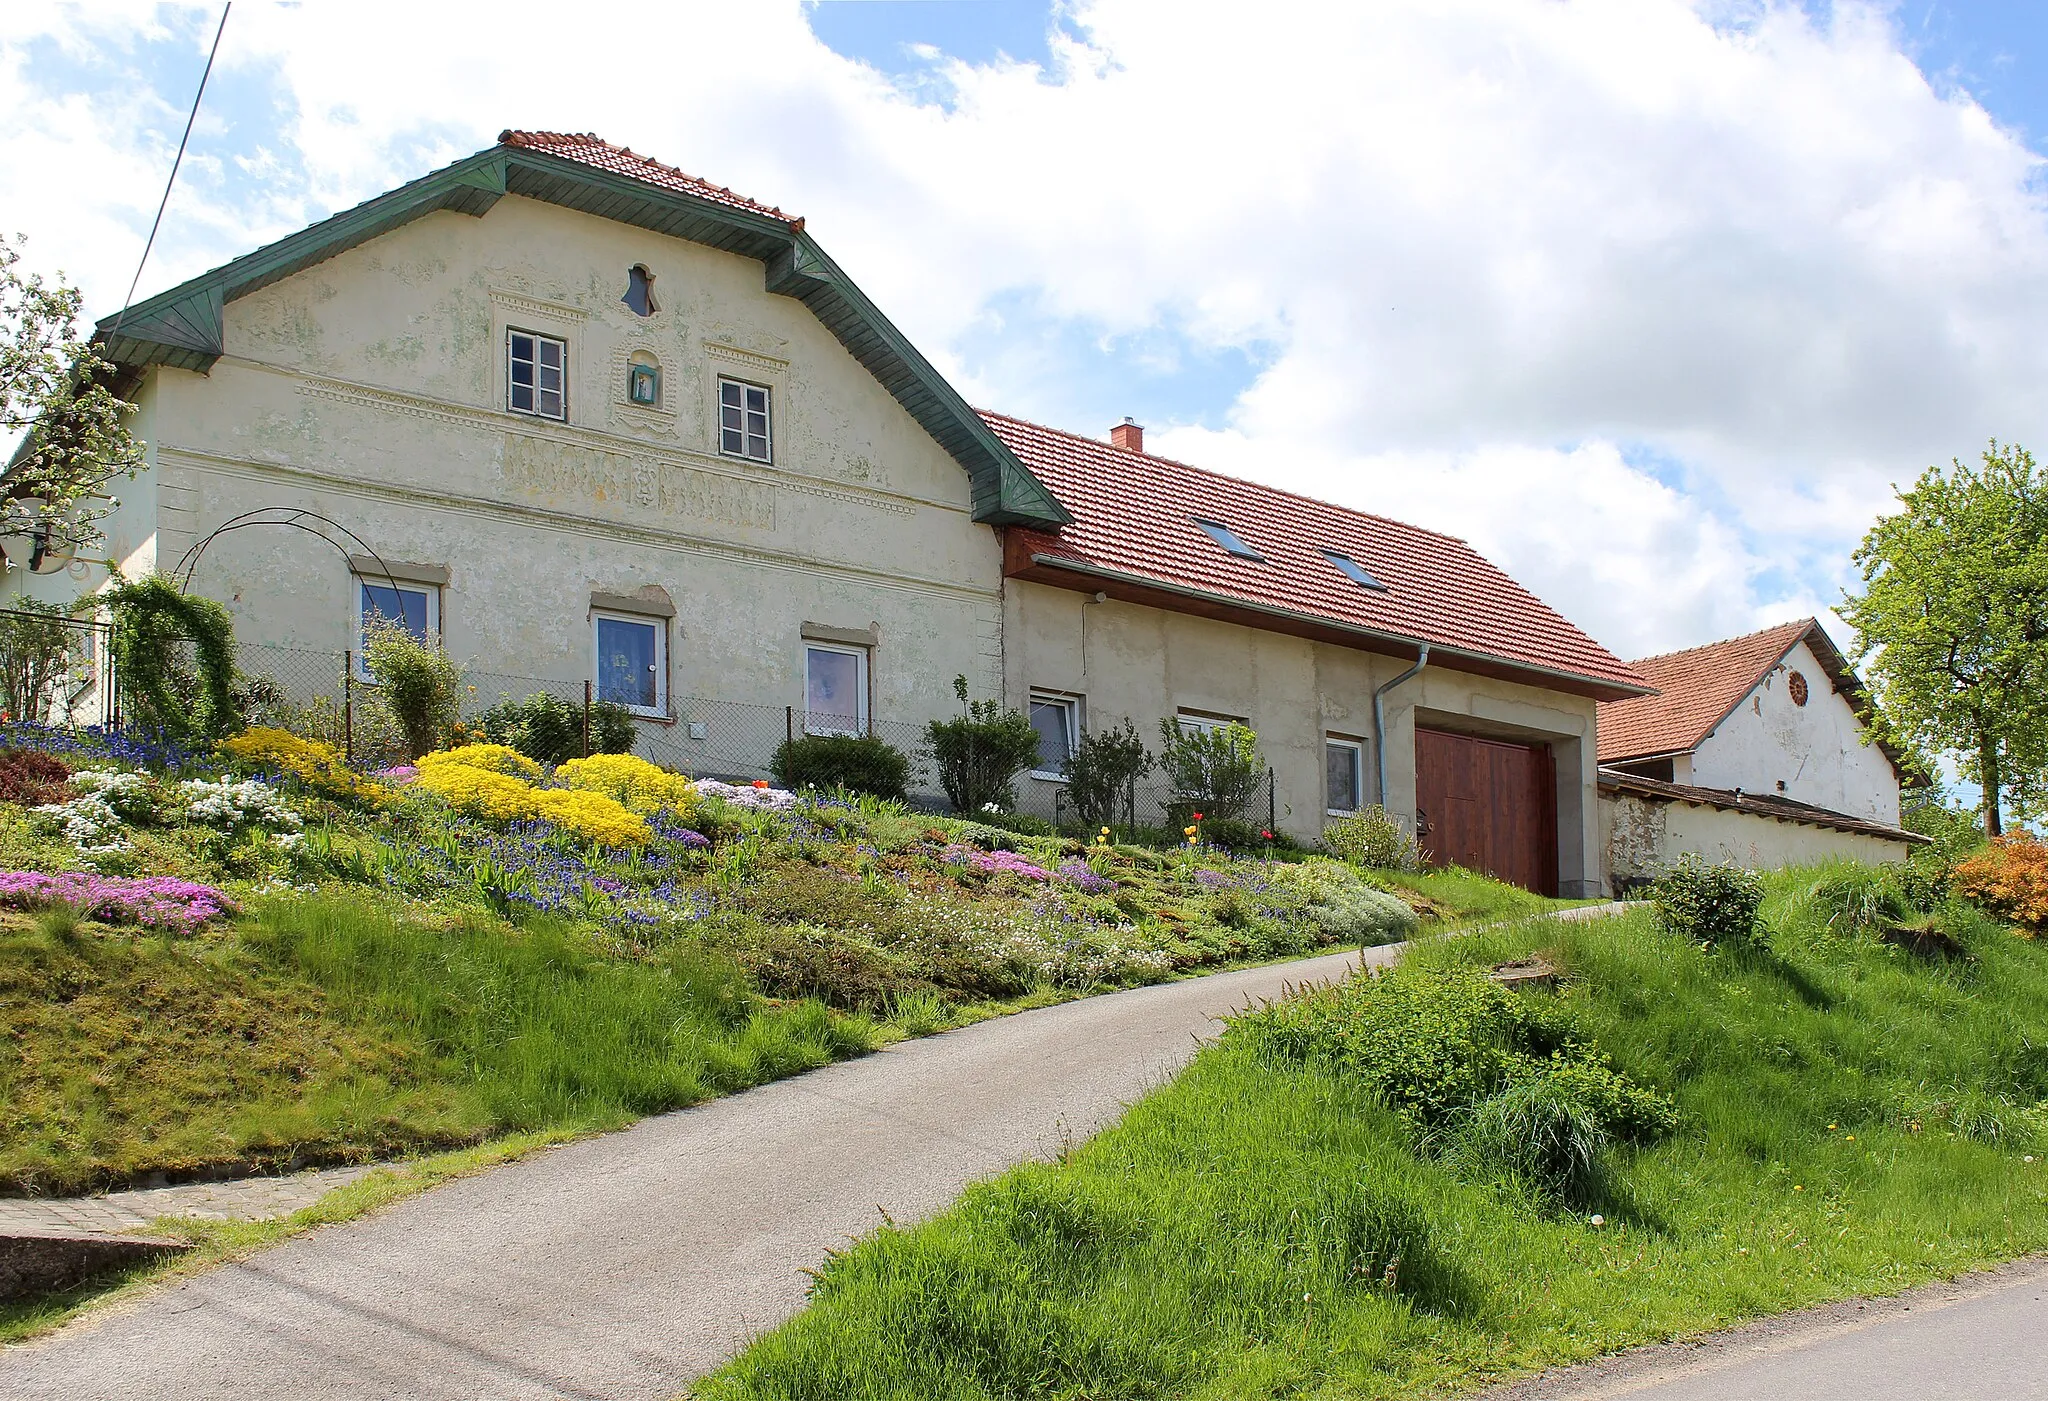 Photo showing: House No 19 in Buková, part of Nížkov, Czech Republic